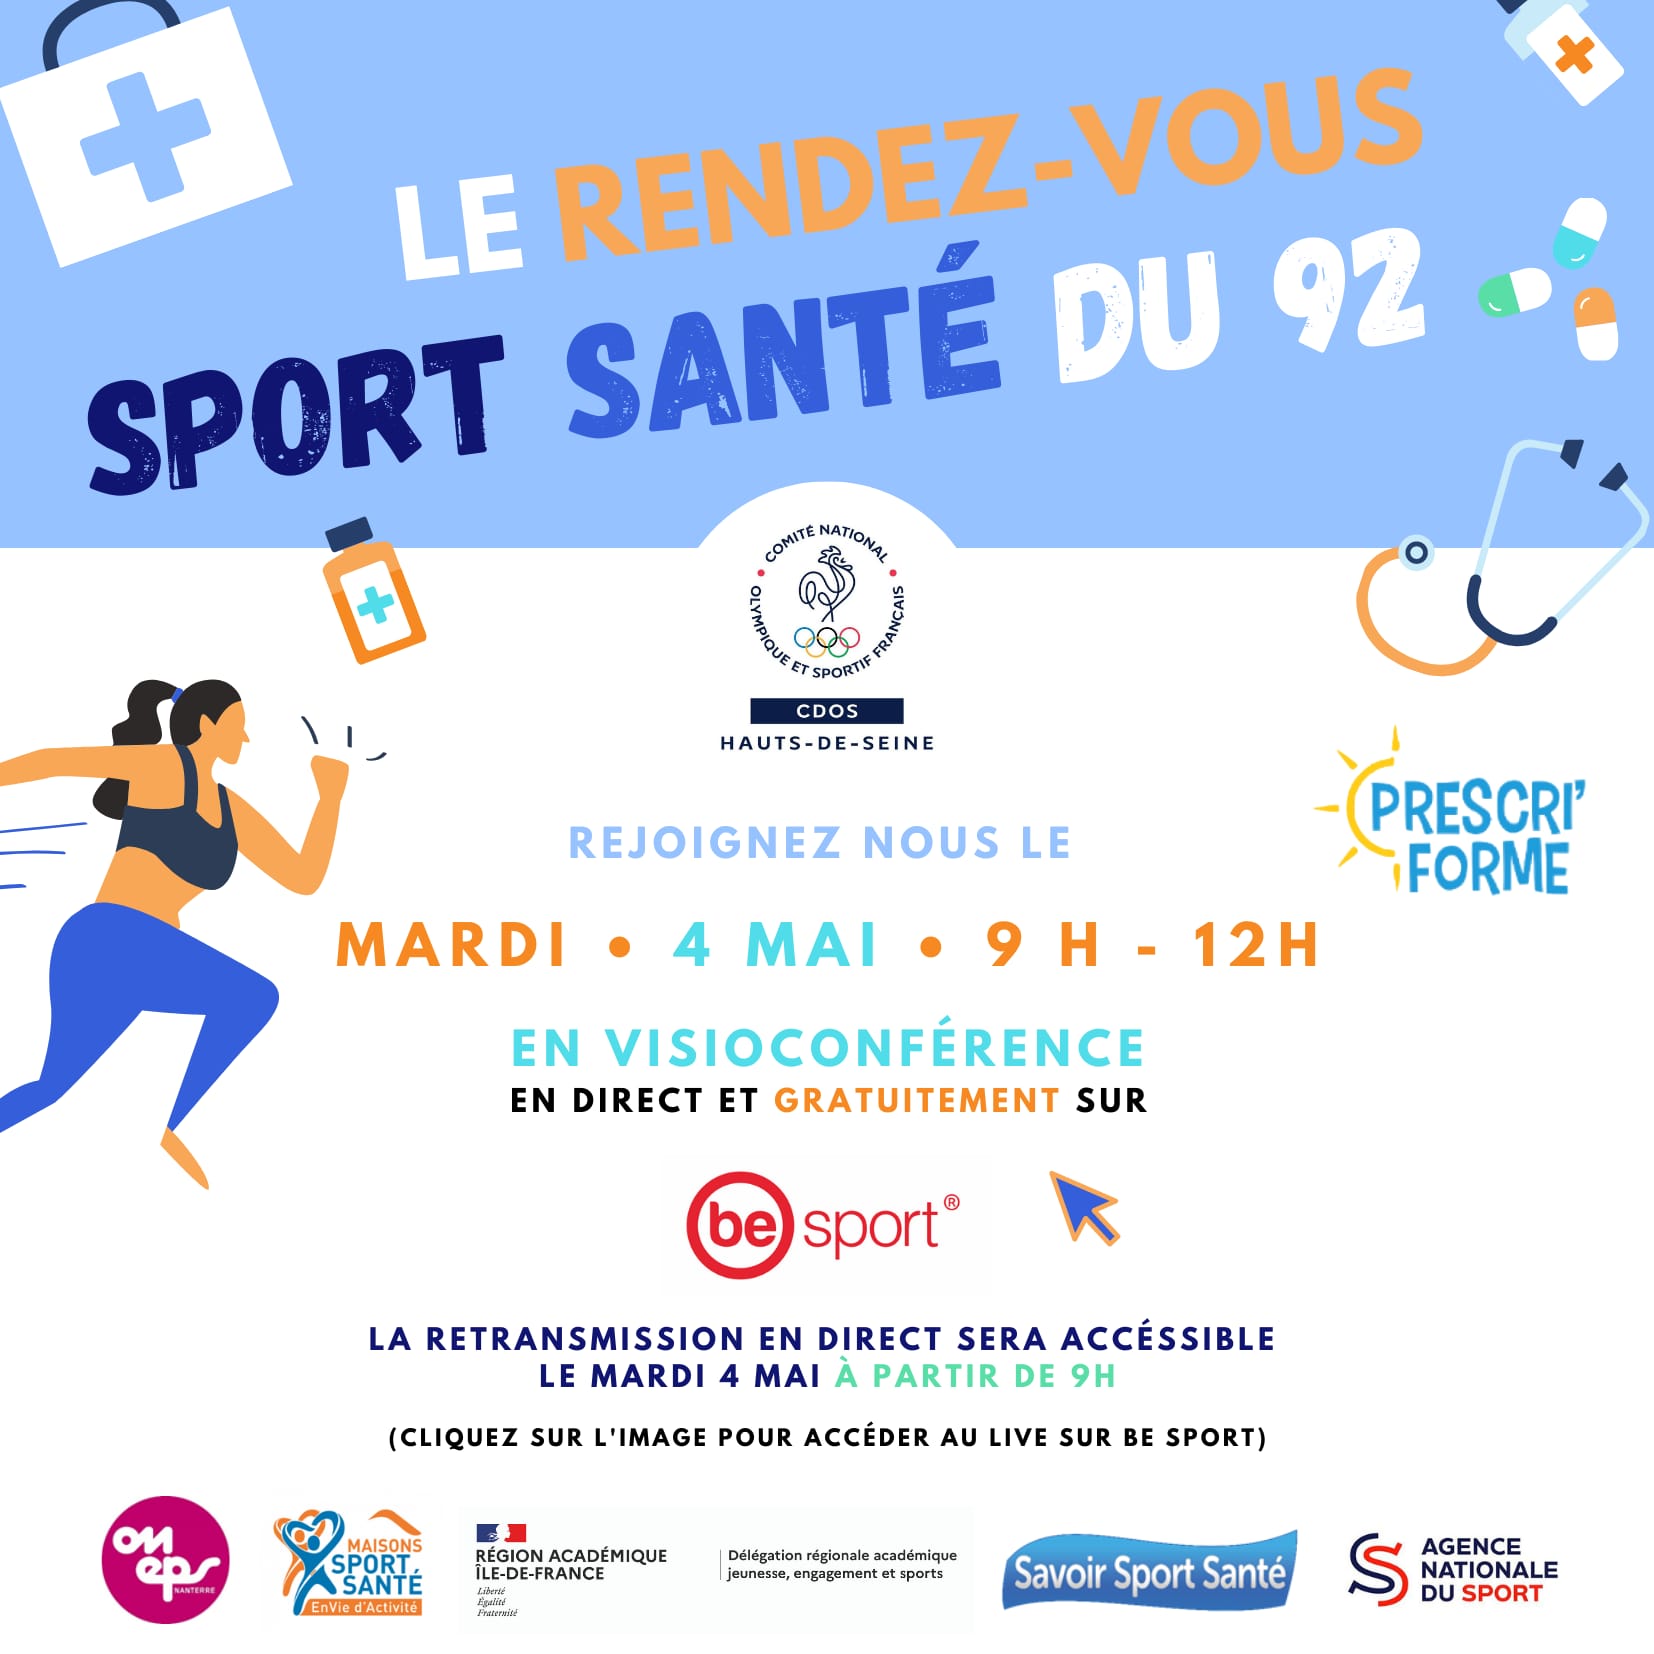 Le Rendez-vous Sport Santé du 92 - Mardi 4 mai à 9h en direct sur Be Sport !